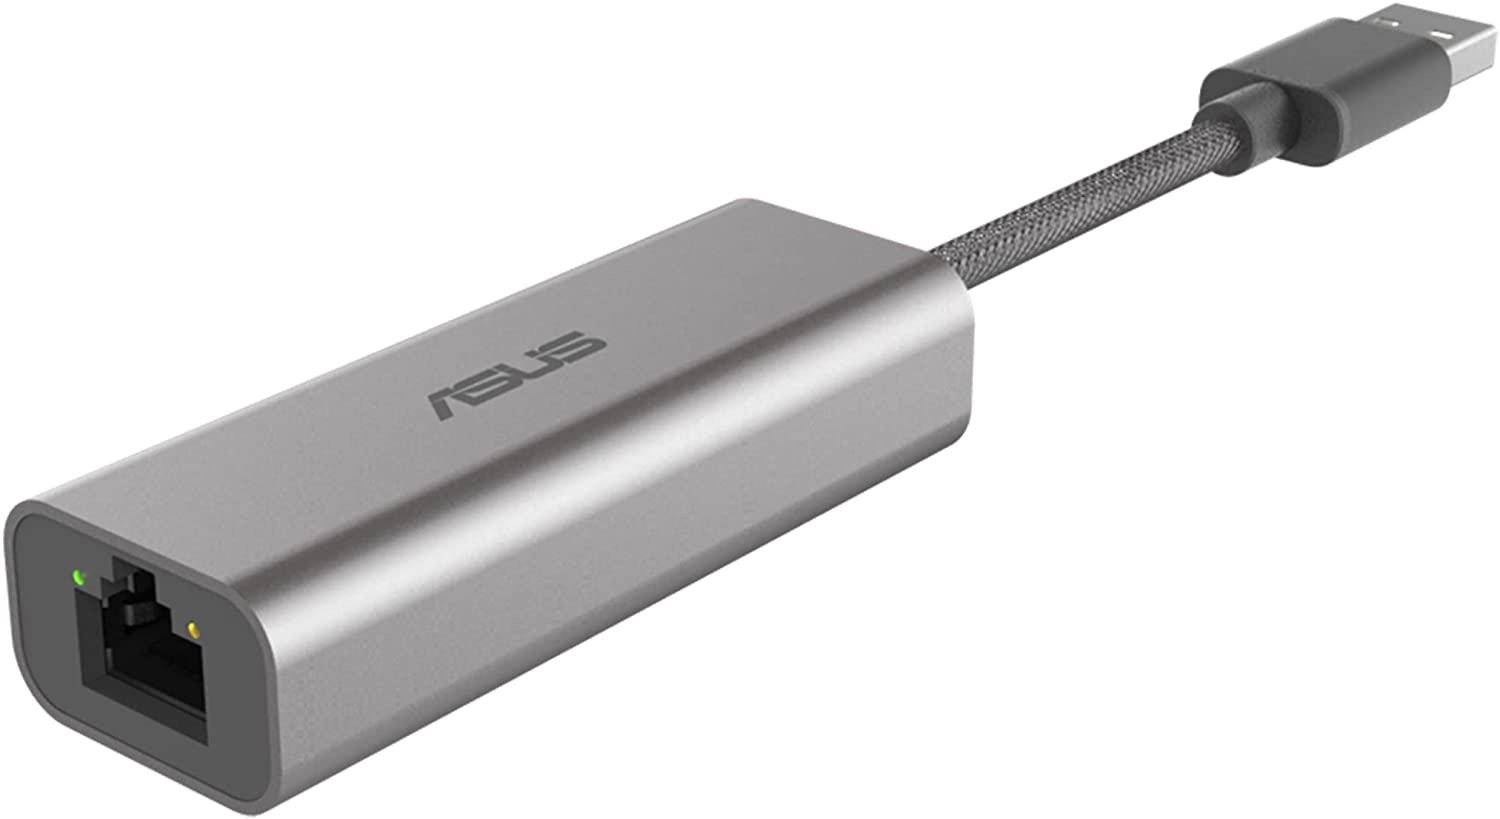 ASUS USB-C2500 - network adapter - USB 3.2 Gen 1 - 2.5GBase-T x 1 Rūteris